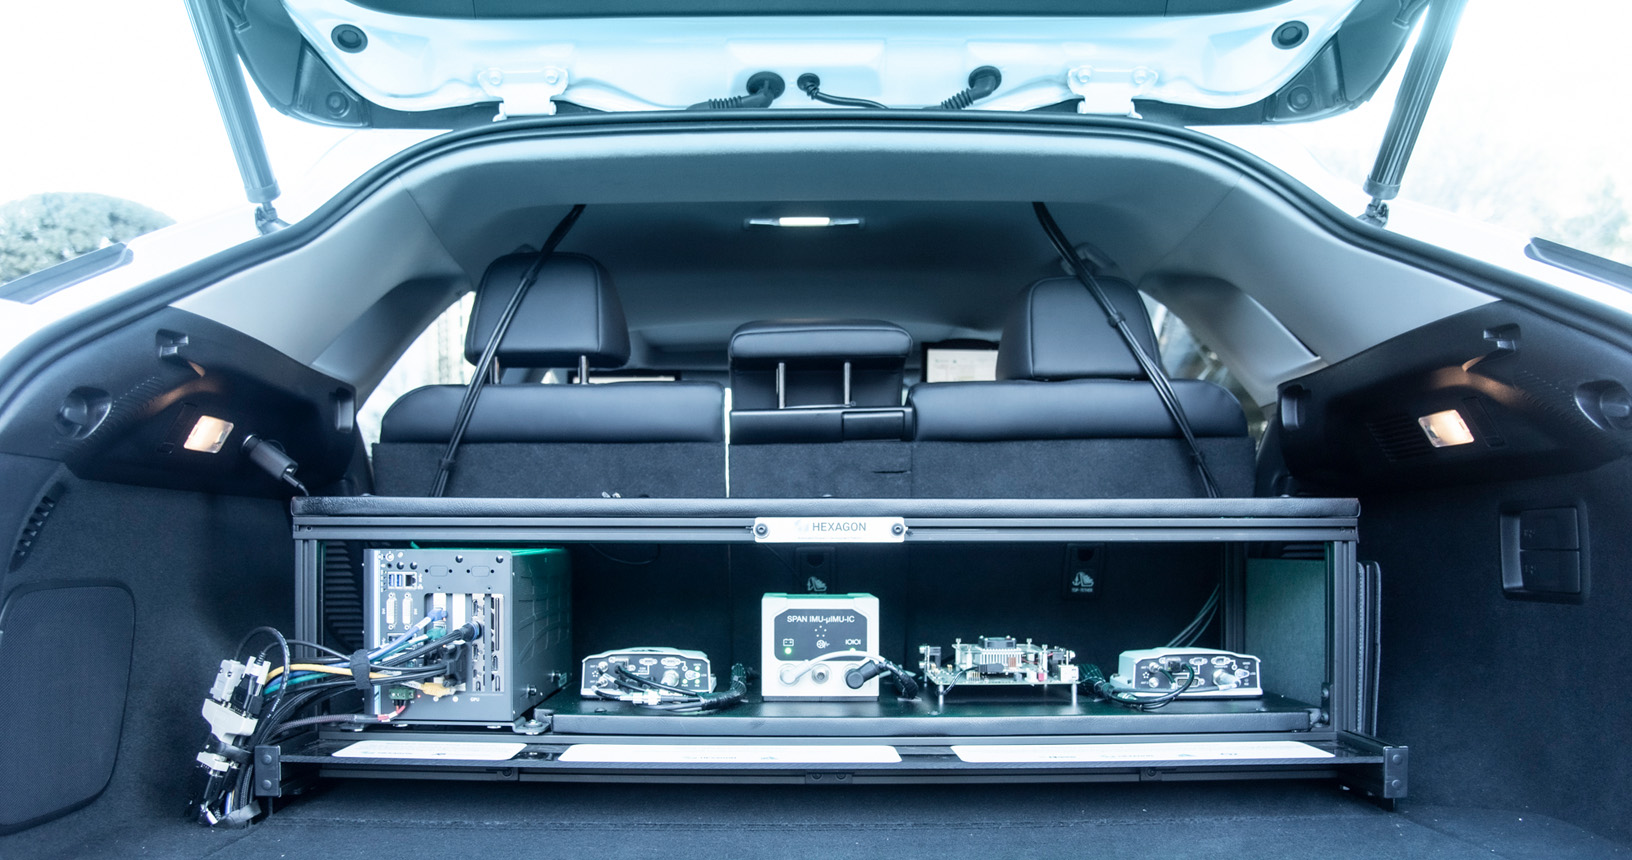 Maletero abierto de un coche Lexus que muestra varios equipos para permitir el funcionamiento autónomo.